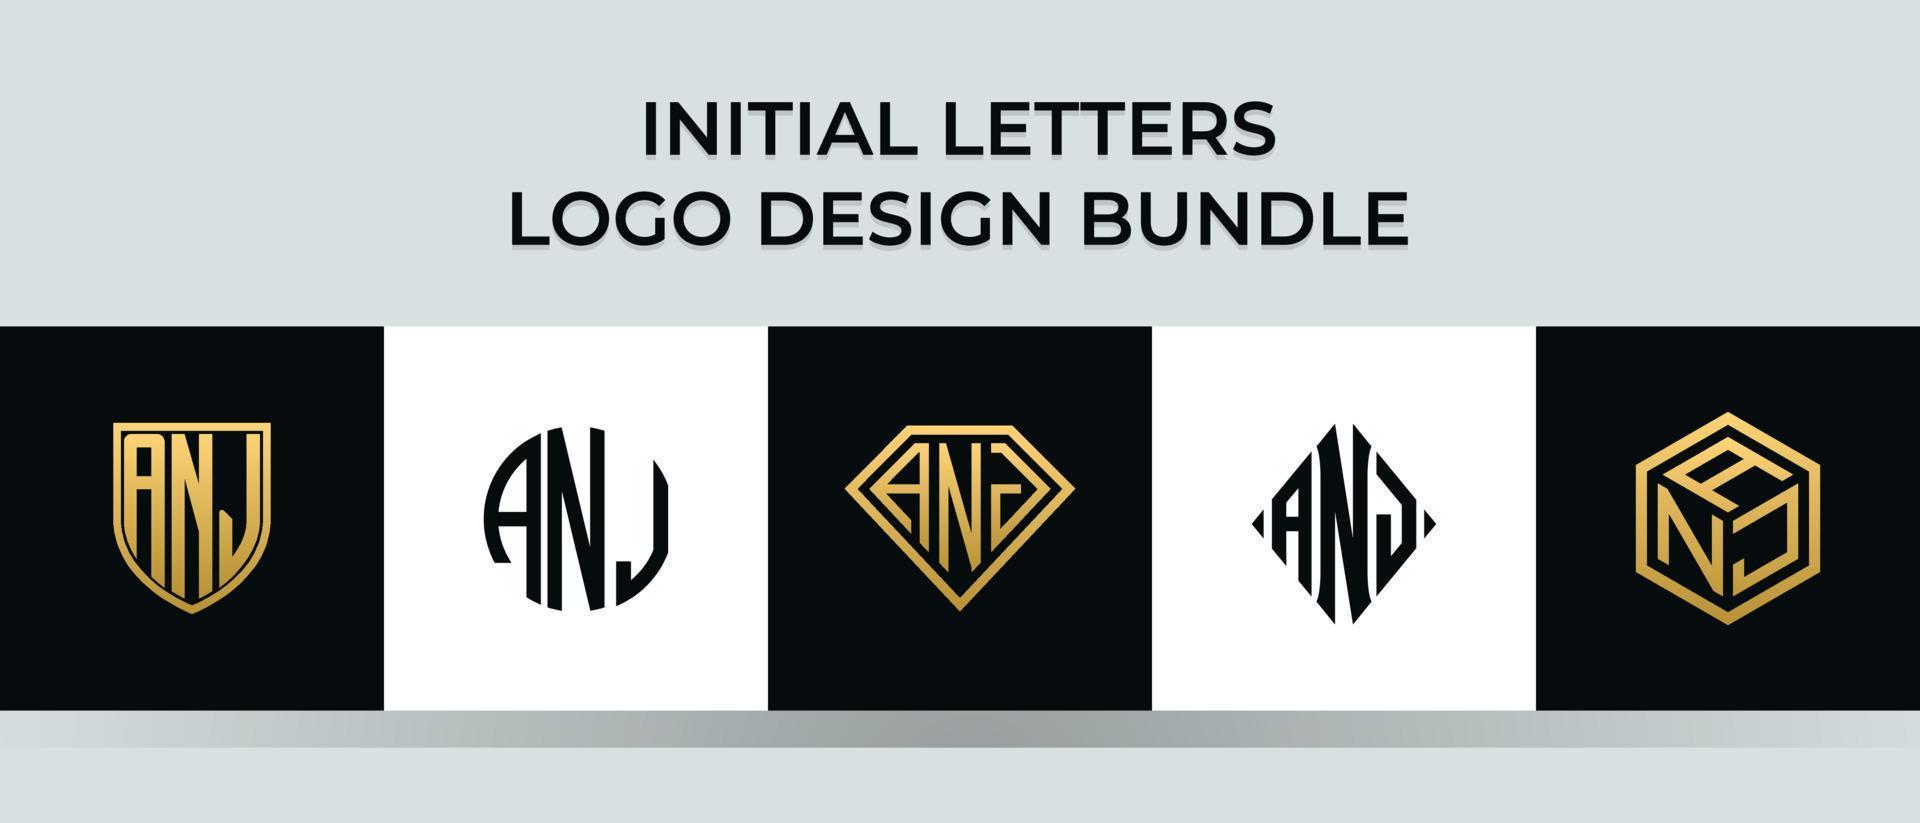 Initial letters ANJ logo designs Bundle vector